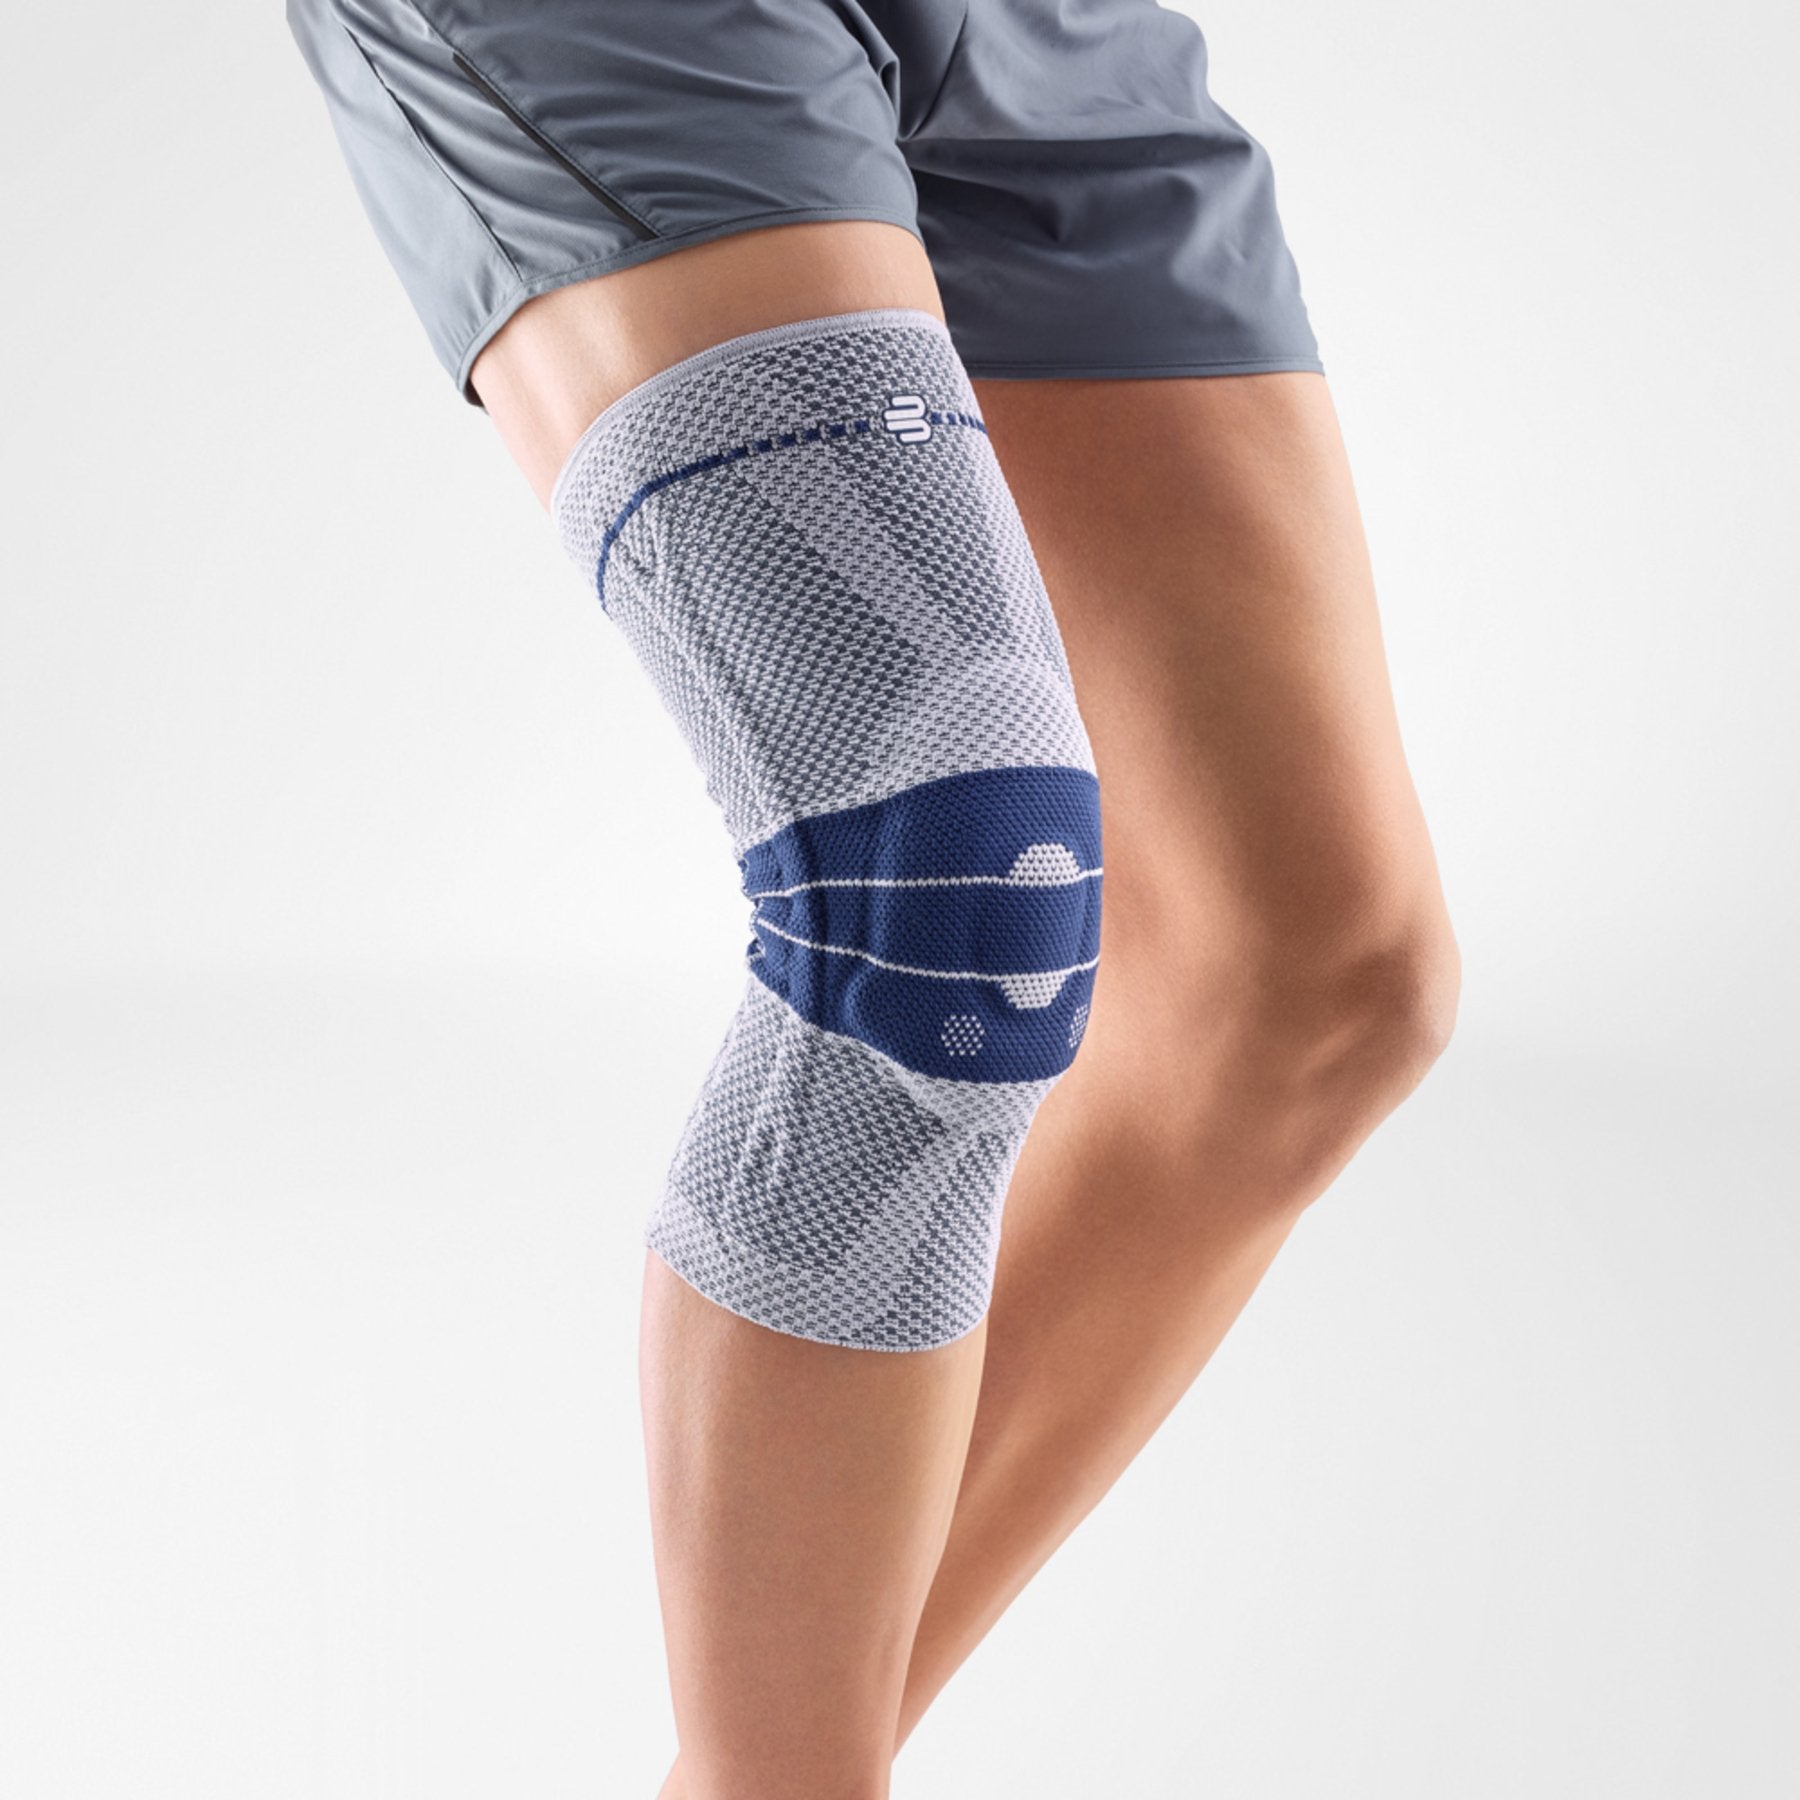 Elastic Slip-on Cotton Fabric Knee Pain Support Sleeve  Best knee sleeves, Knee  sleeves, Knee compression sleeve